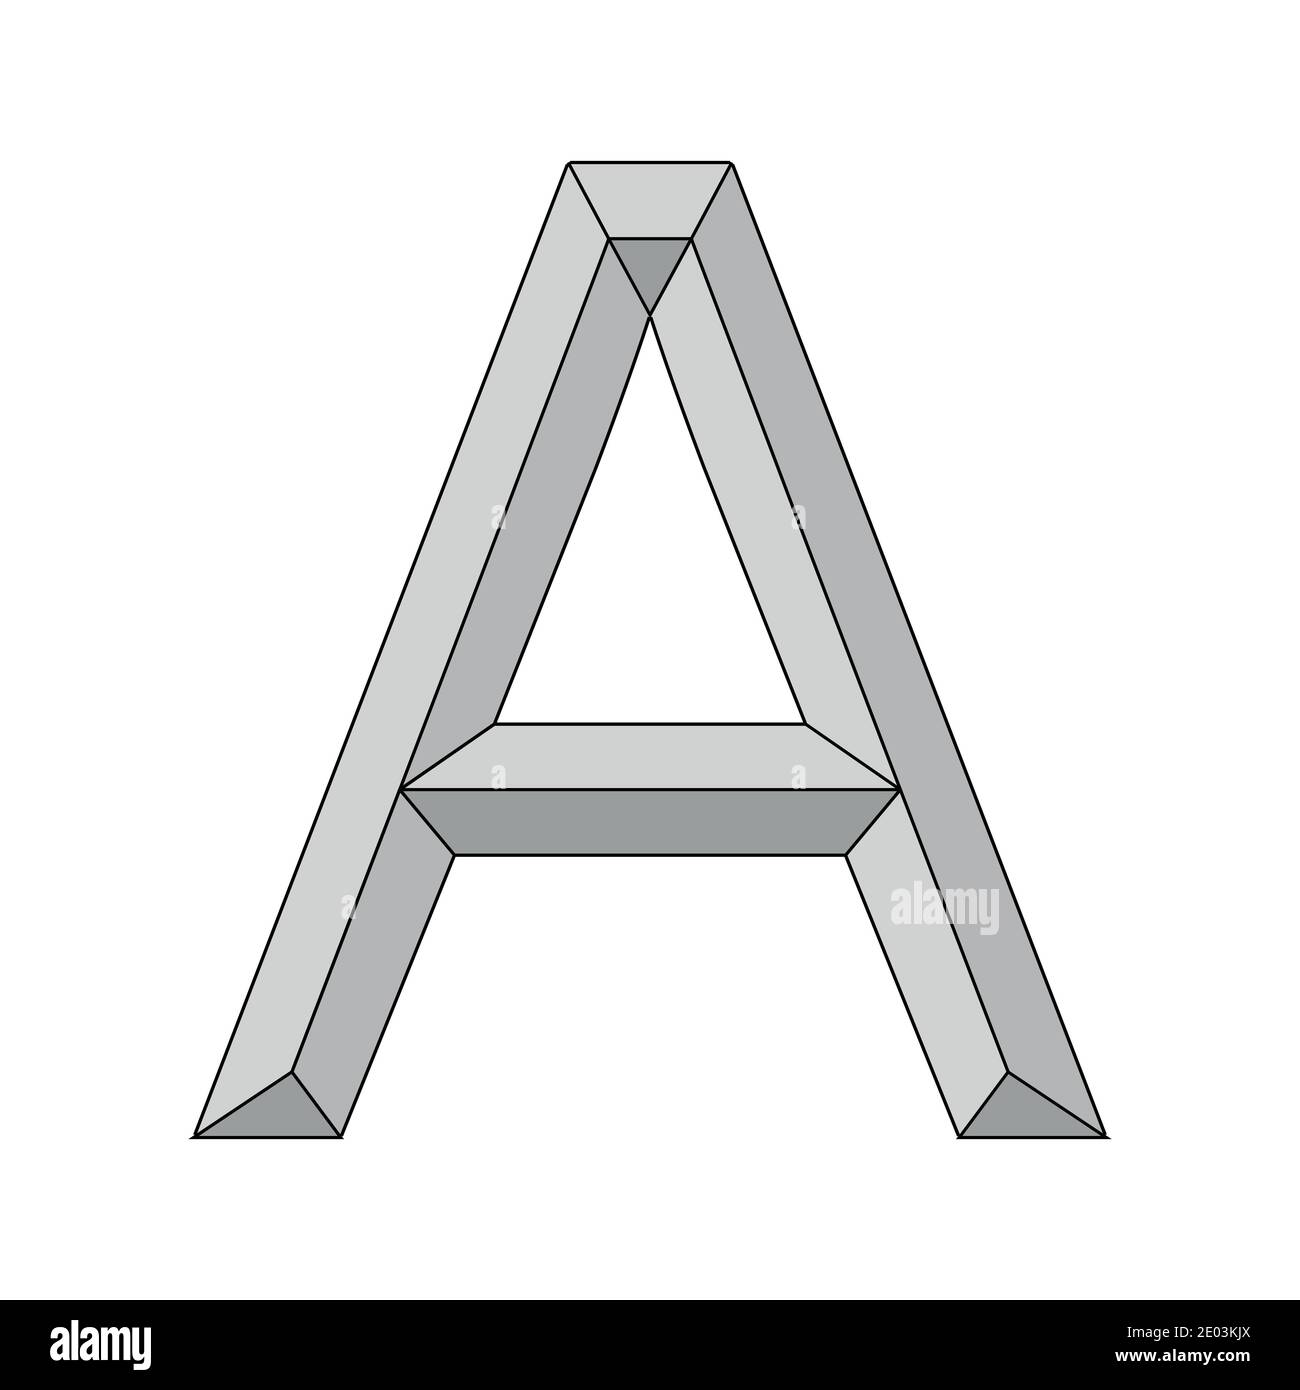 logo lettre tridimensionnelle a, vecteur majuscule première lettre de l'alphabet un symbole primauté et origine Illustration de Vecteur